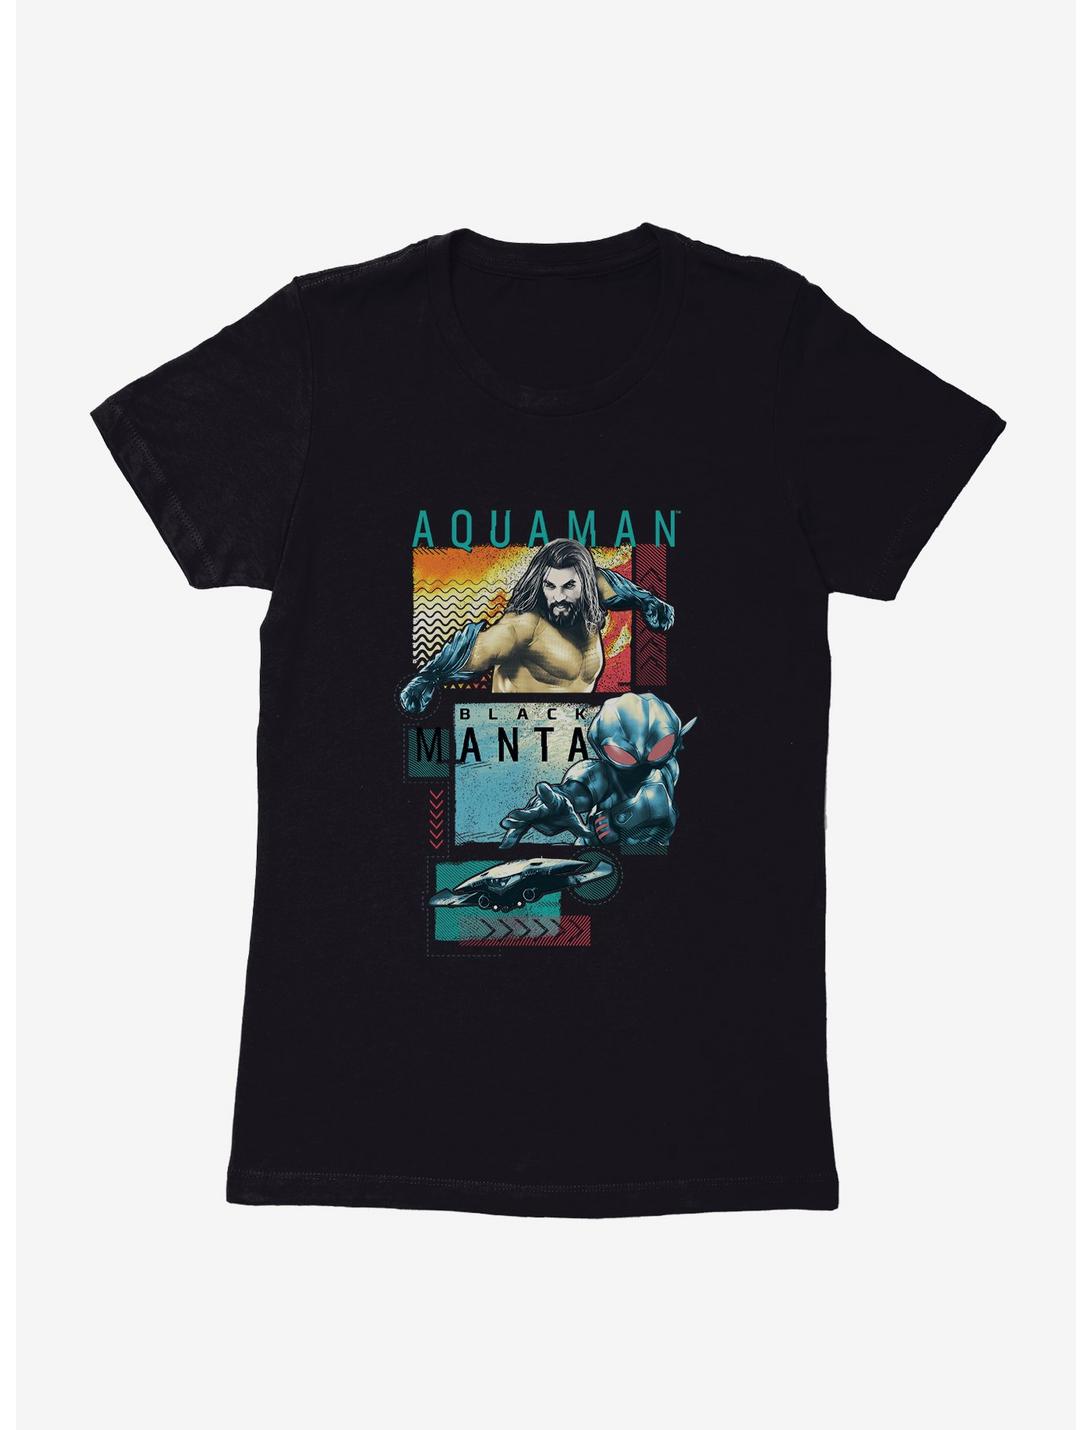 DC Comics Aquaman Black Manta Womens T-Shirt, BLACK, hi-res